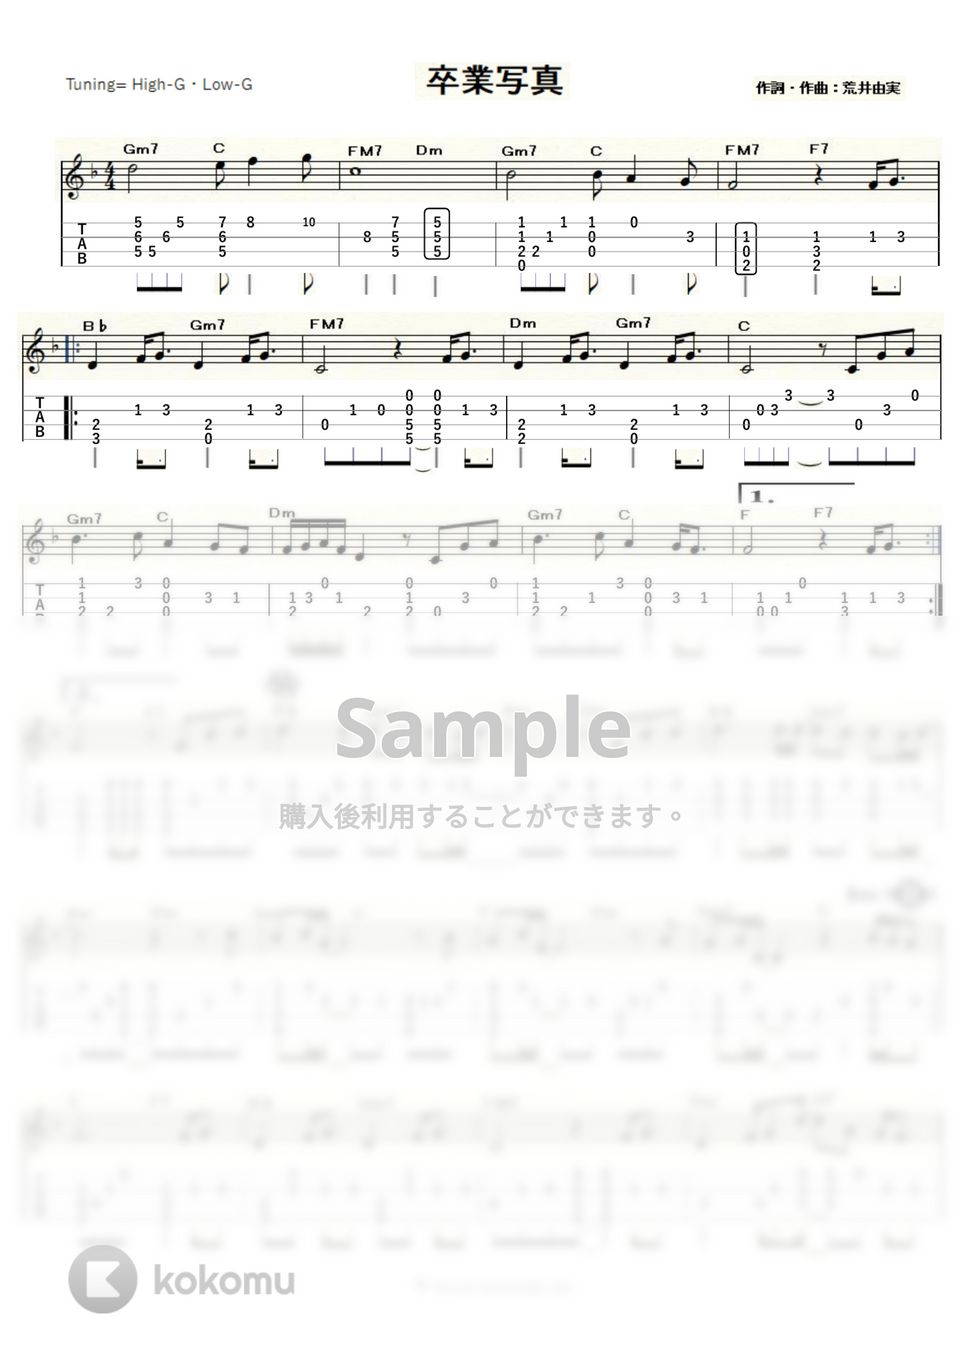 荒井由実 - 卒業写真 (ｳｸﾚﾚｿﾛ / High-G,Low-G / 中級) by ukulelepapa